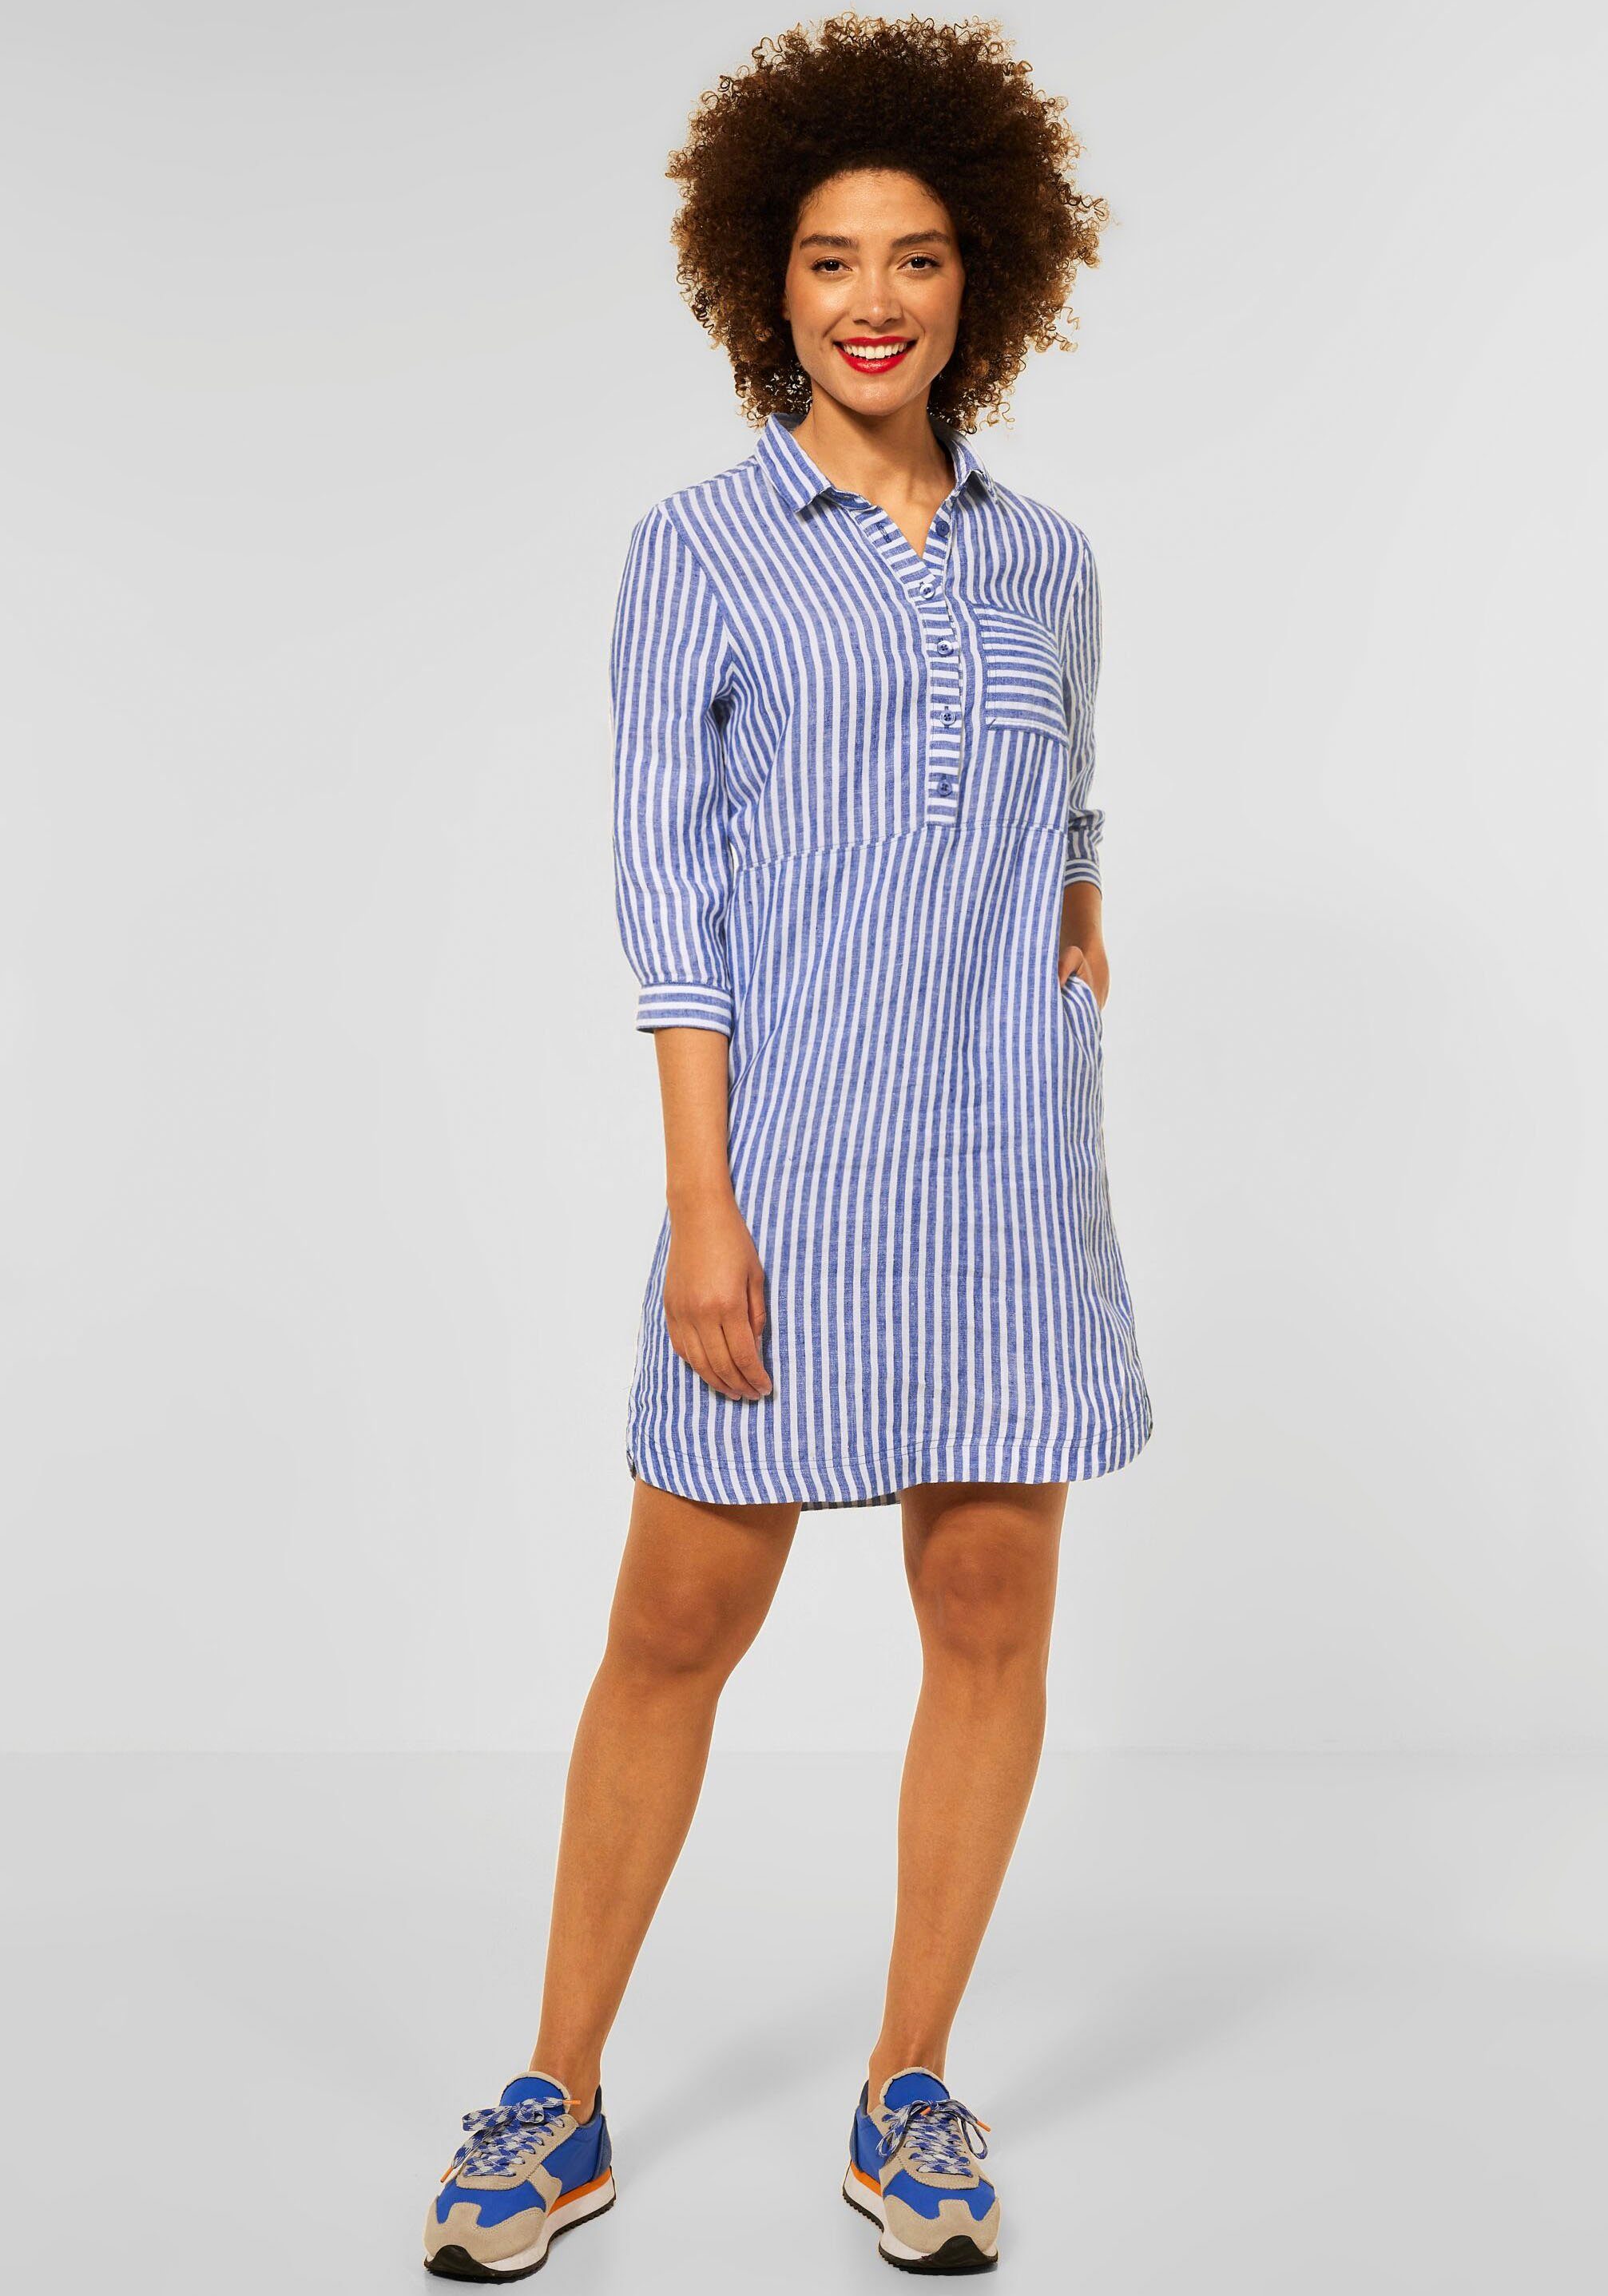 STREET ONE Blusenkleid, blau-weiß gestreift, mit 3/4-Ärmeln online kaufen |  OTTO